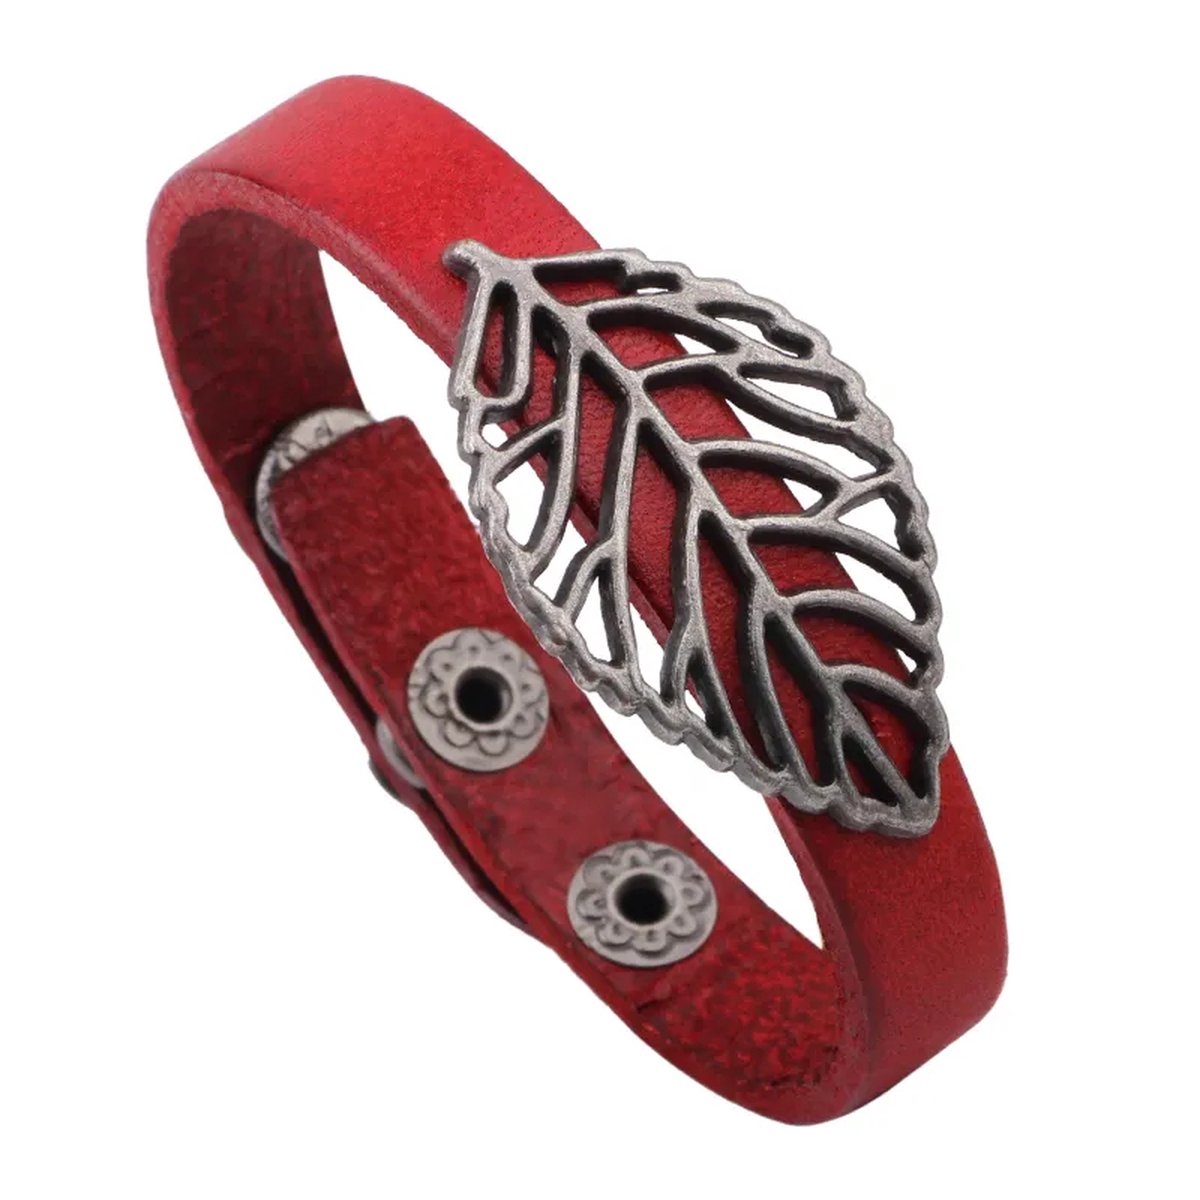 Megasieraden Rode Bladbladeren Armband - Lederen Riem - Metalen Knoop Gesp - Armband met Bladbladeren - Rode Armband